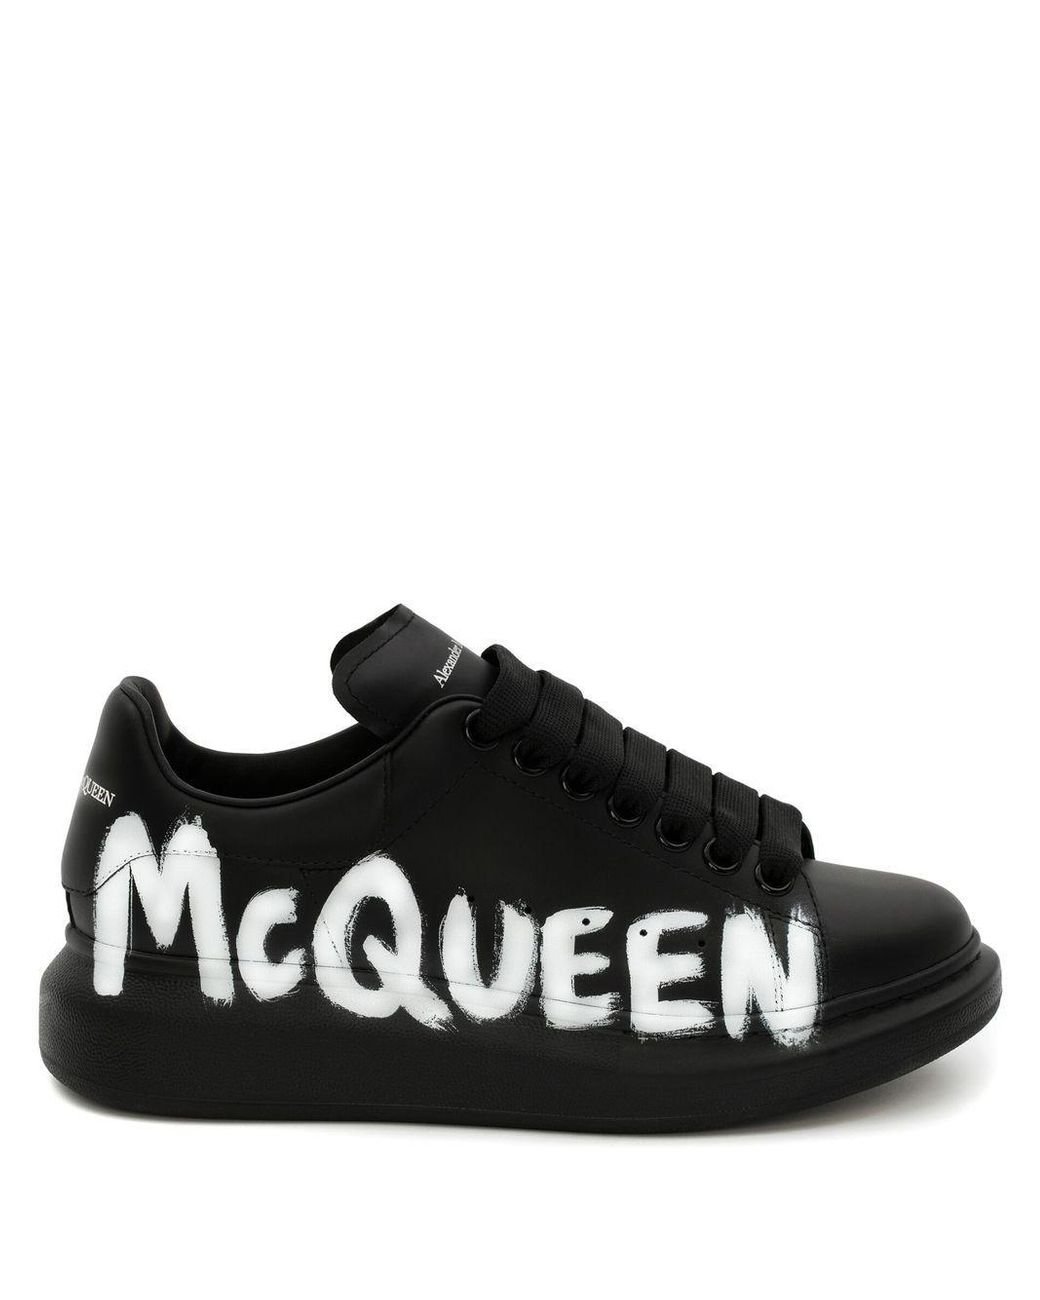 Alexander McQueen Oversized Black